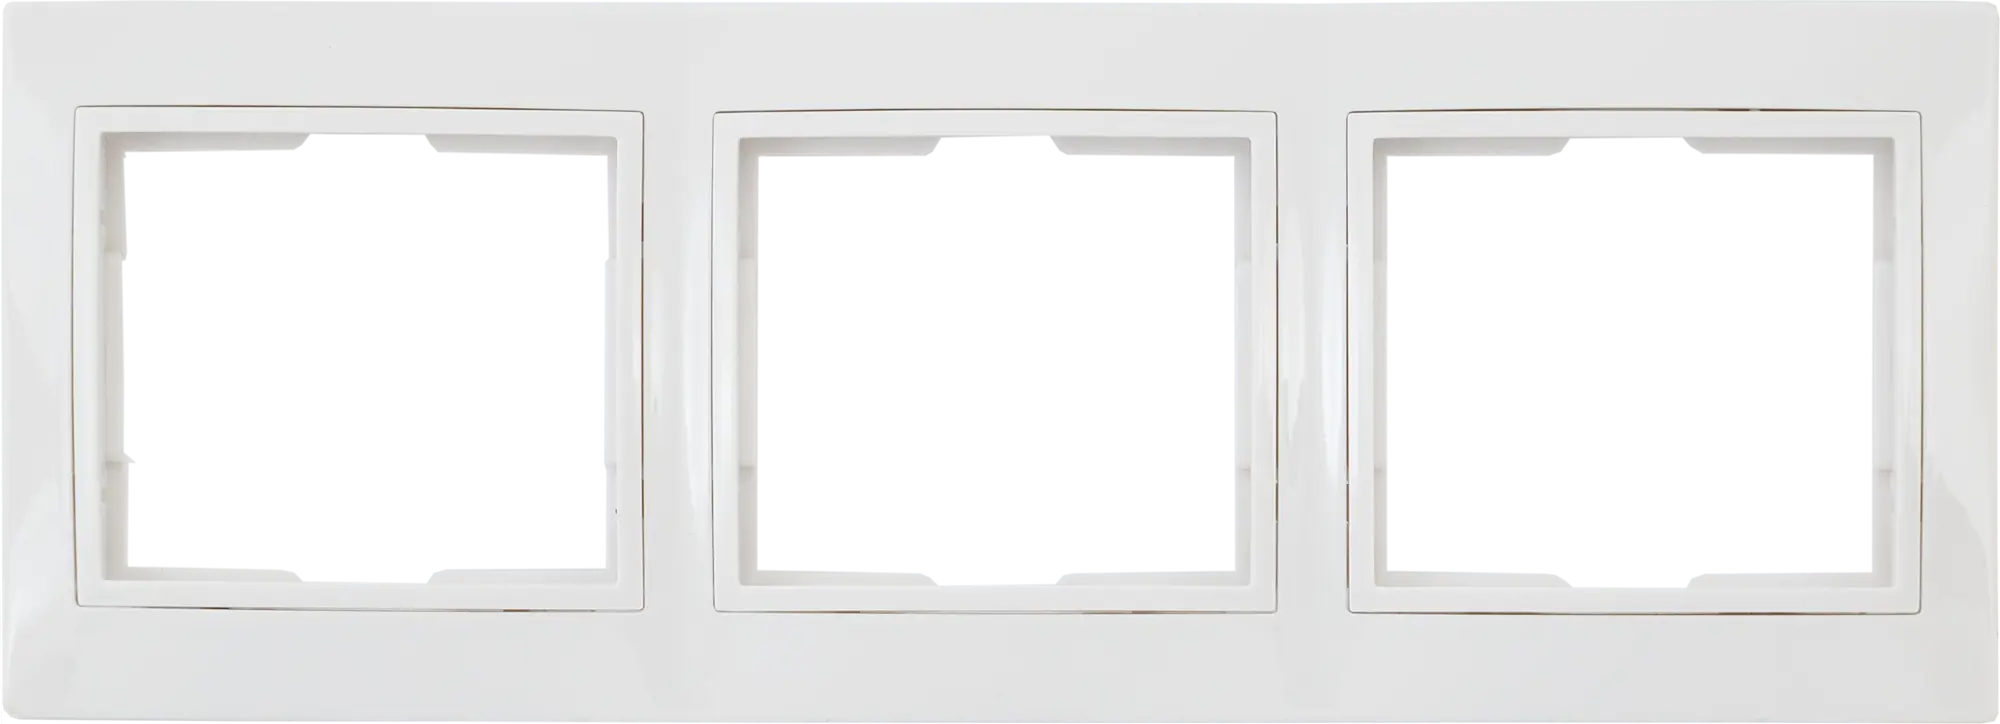 Рамка для розеток и выключателей горизонтальная Таймыр 3 поста, цвет белый визитница металлическая горизонтальная серебристая